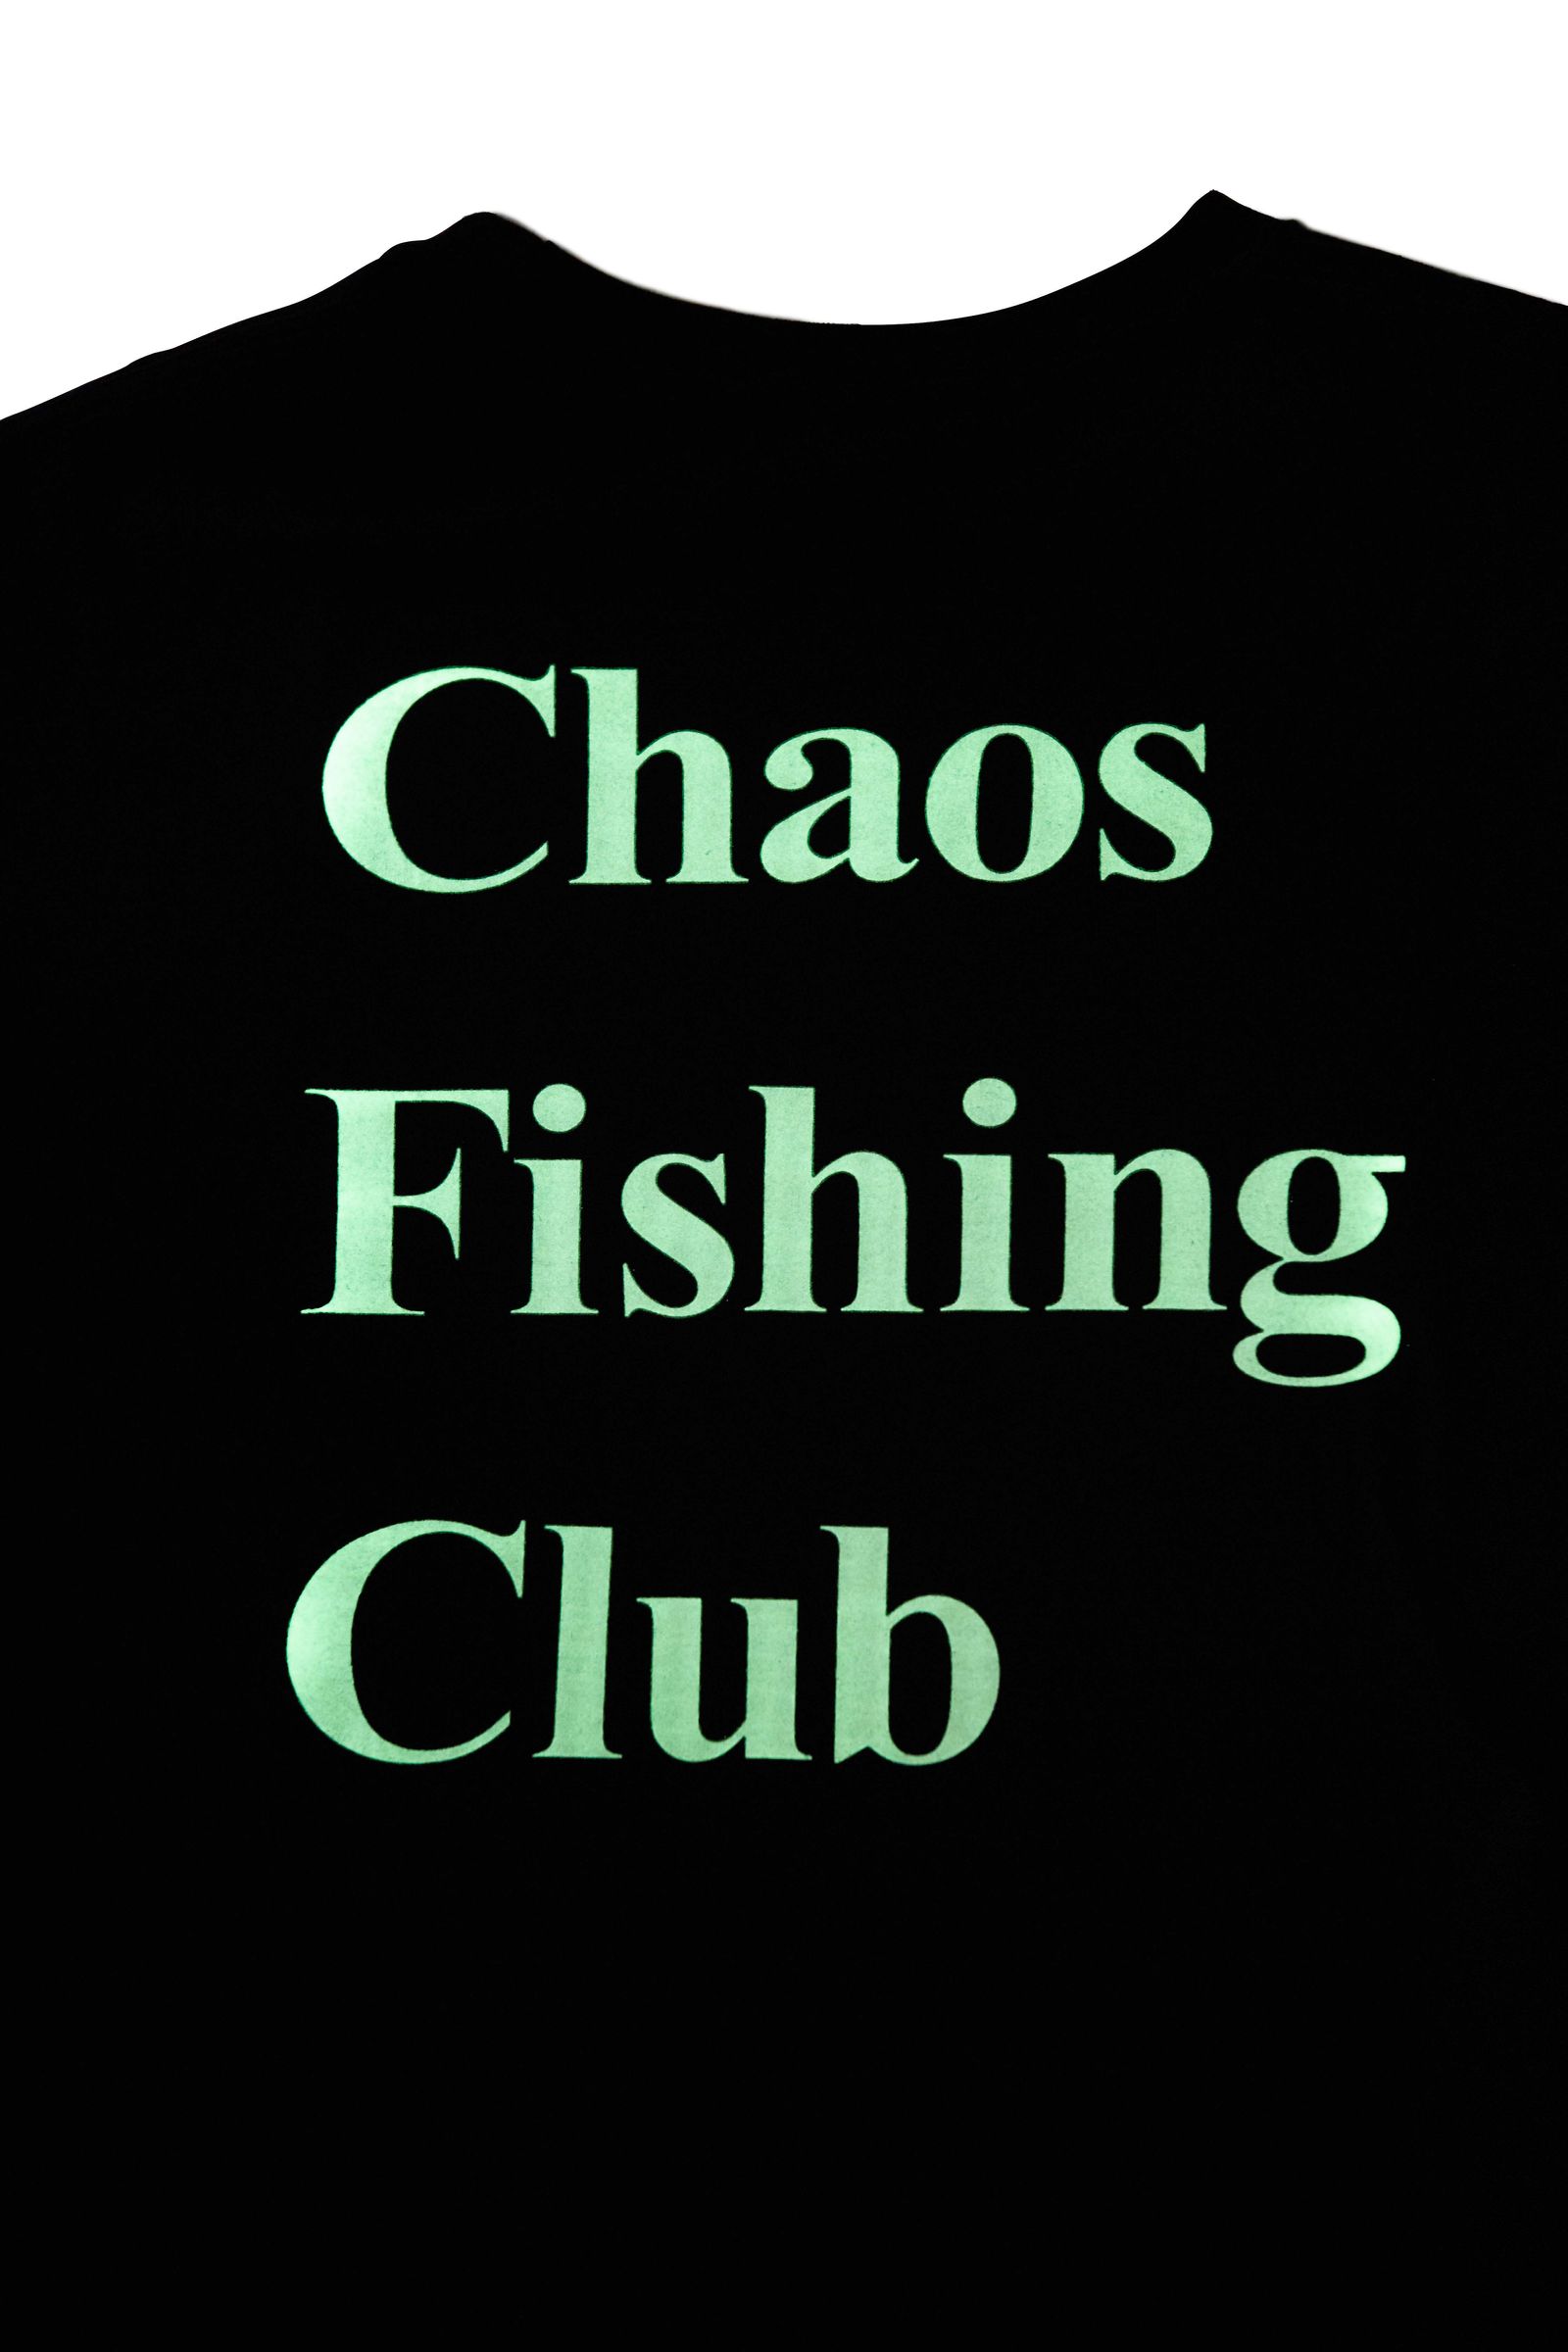 Chaos fishing club